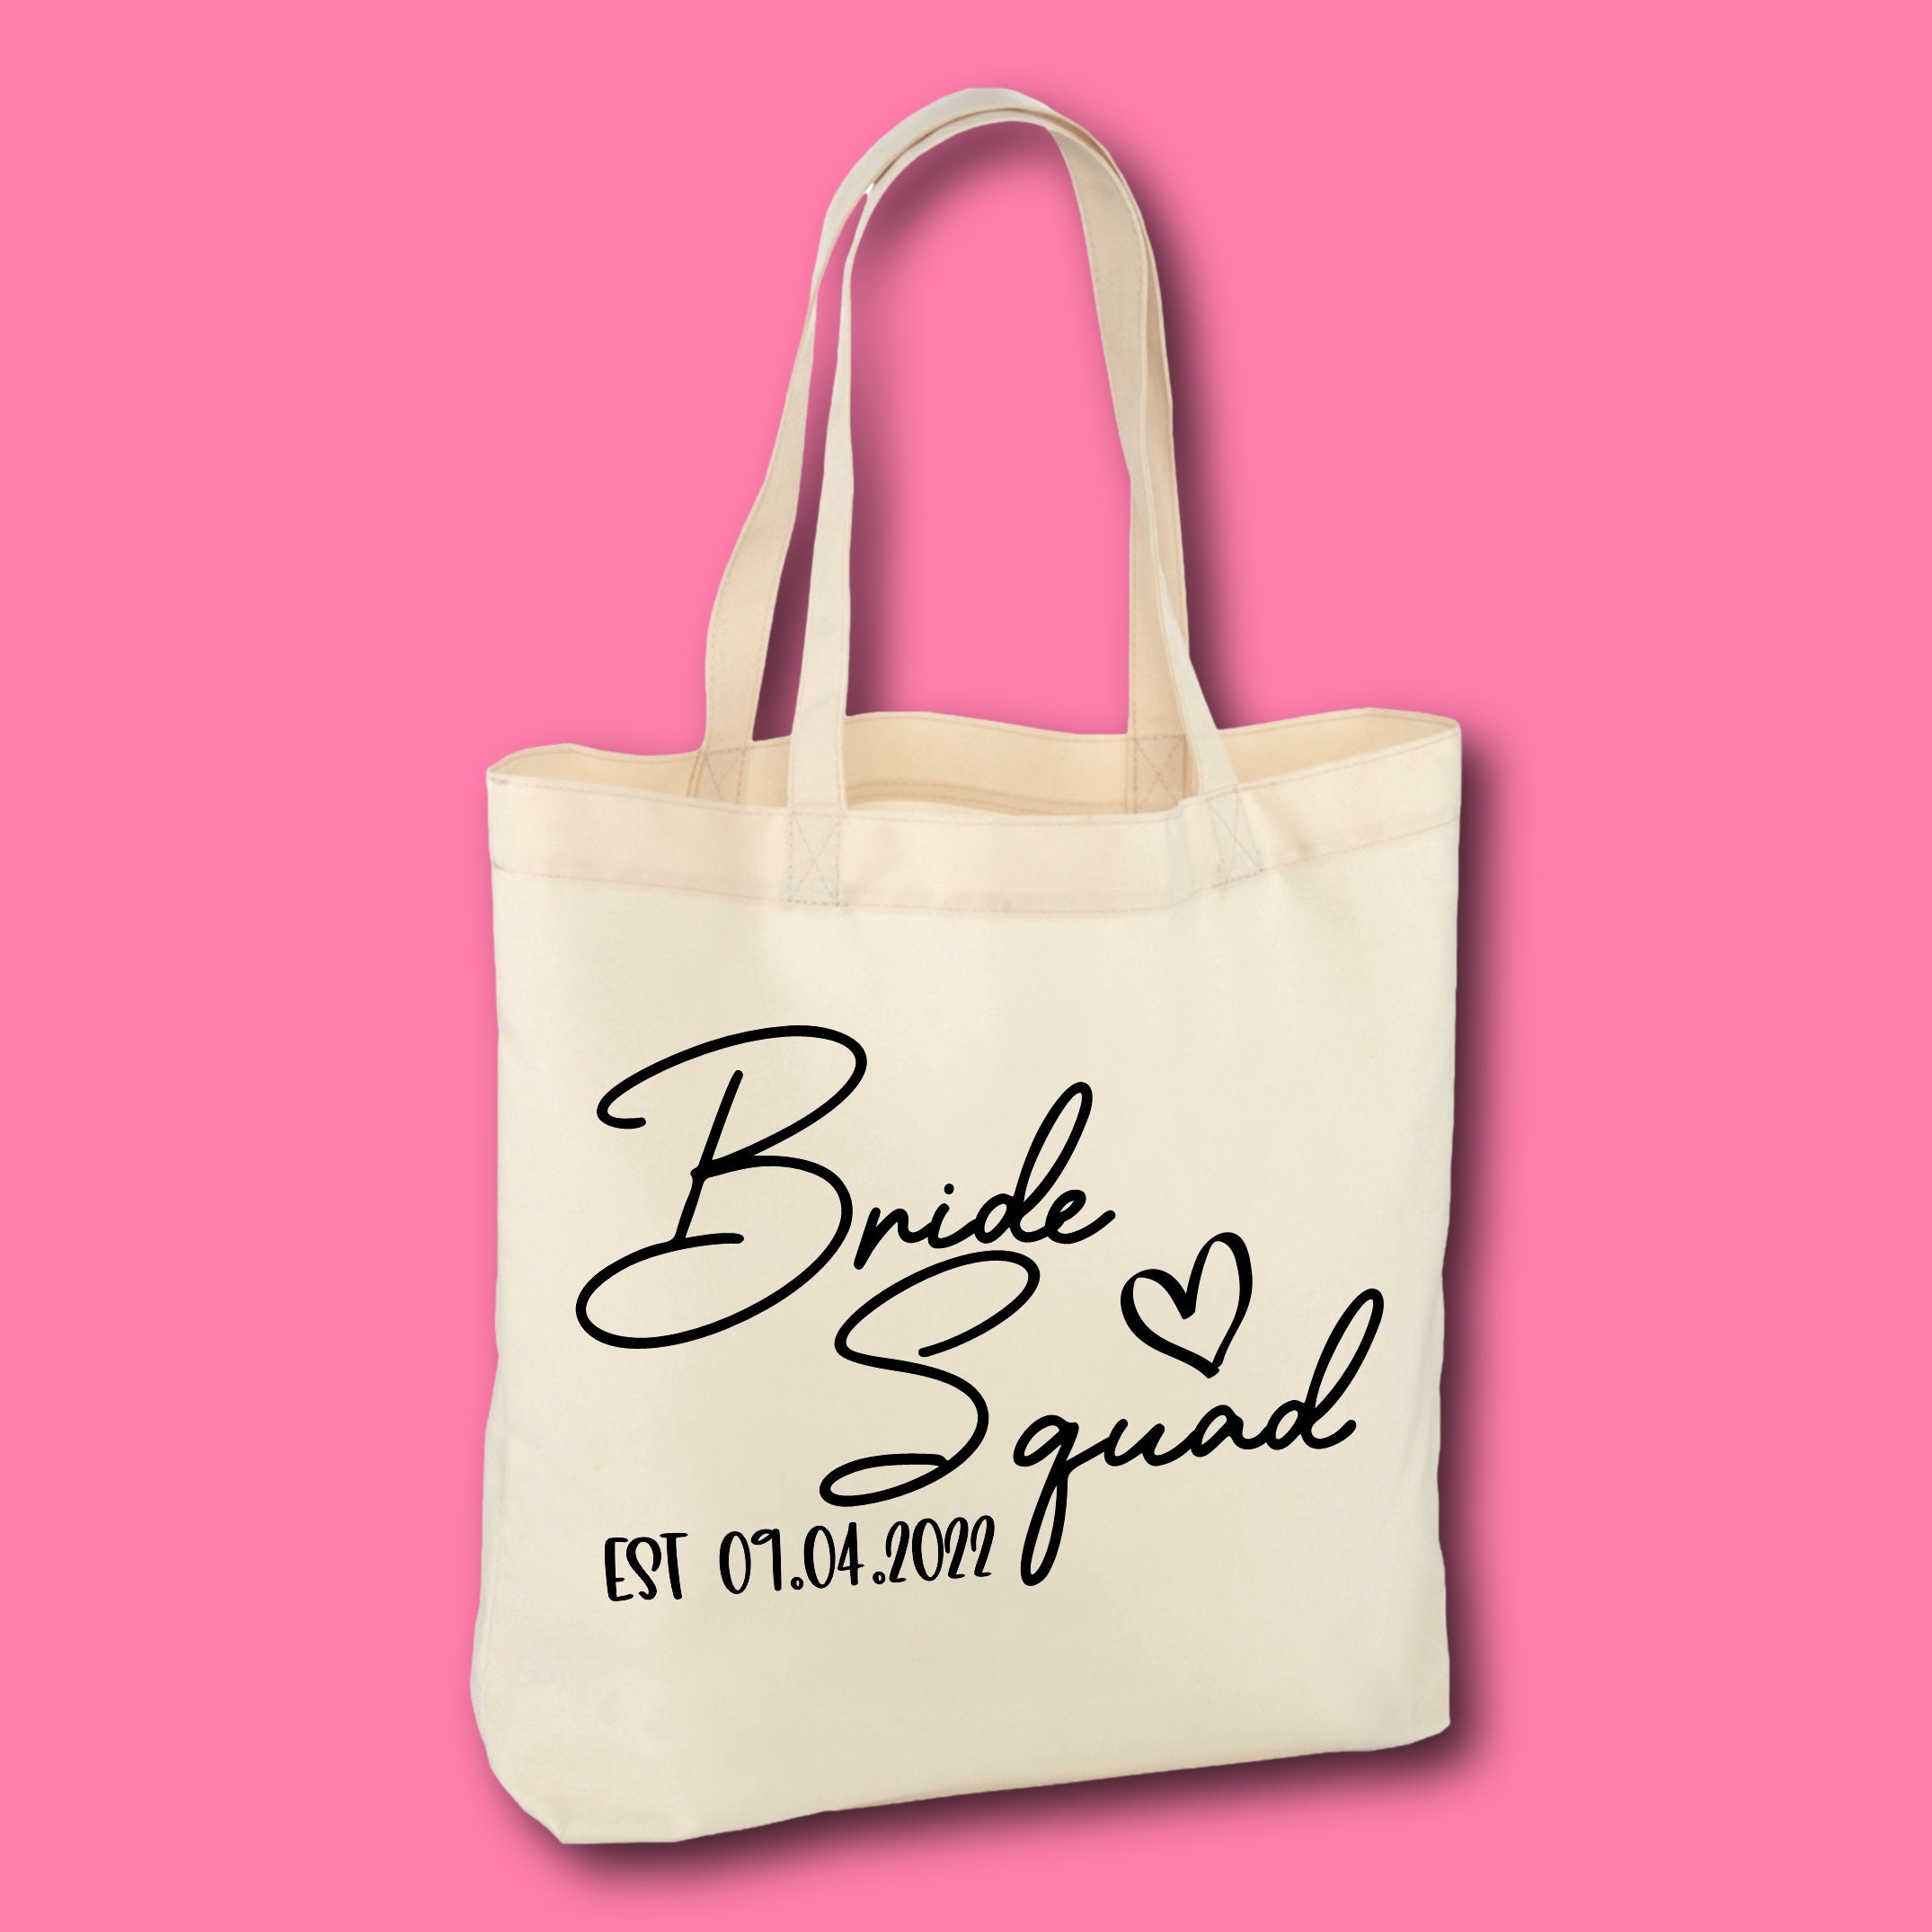 Pink Team Bride Canvas Tote Bag